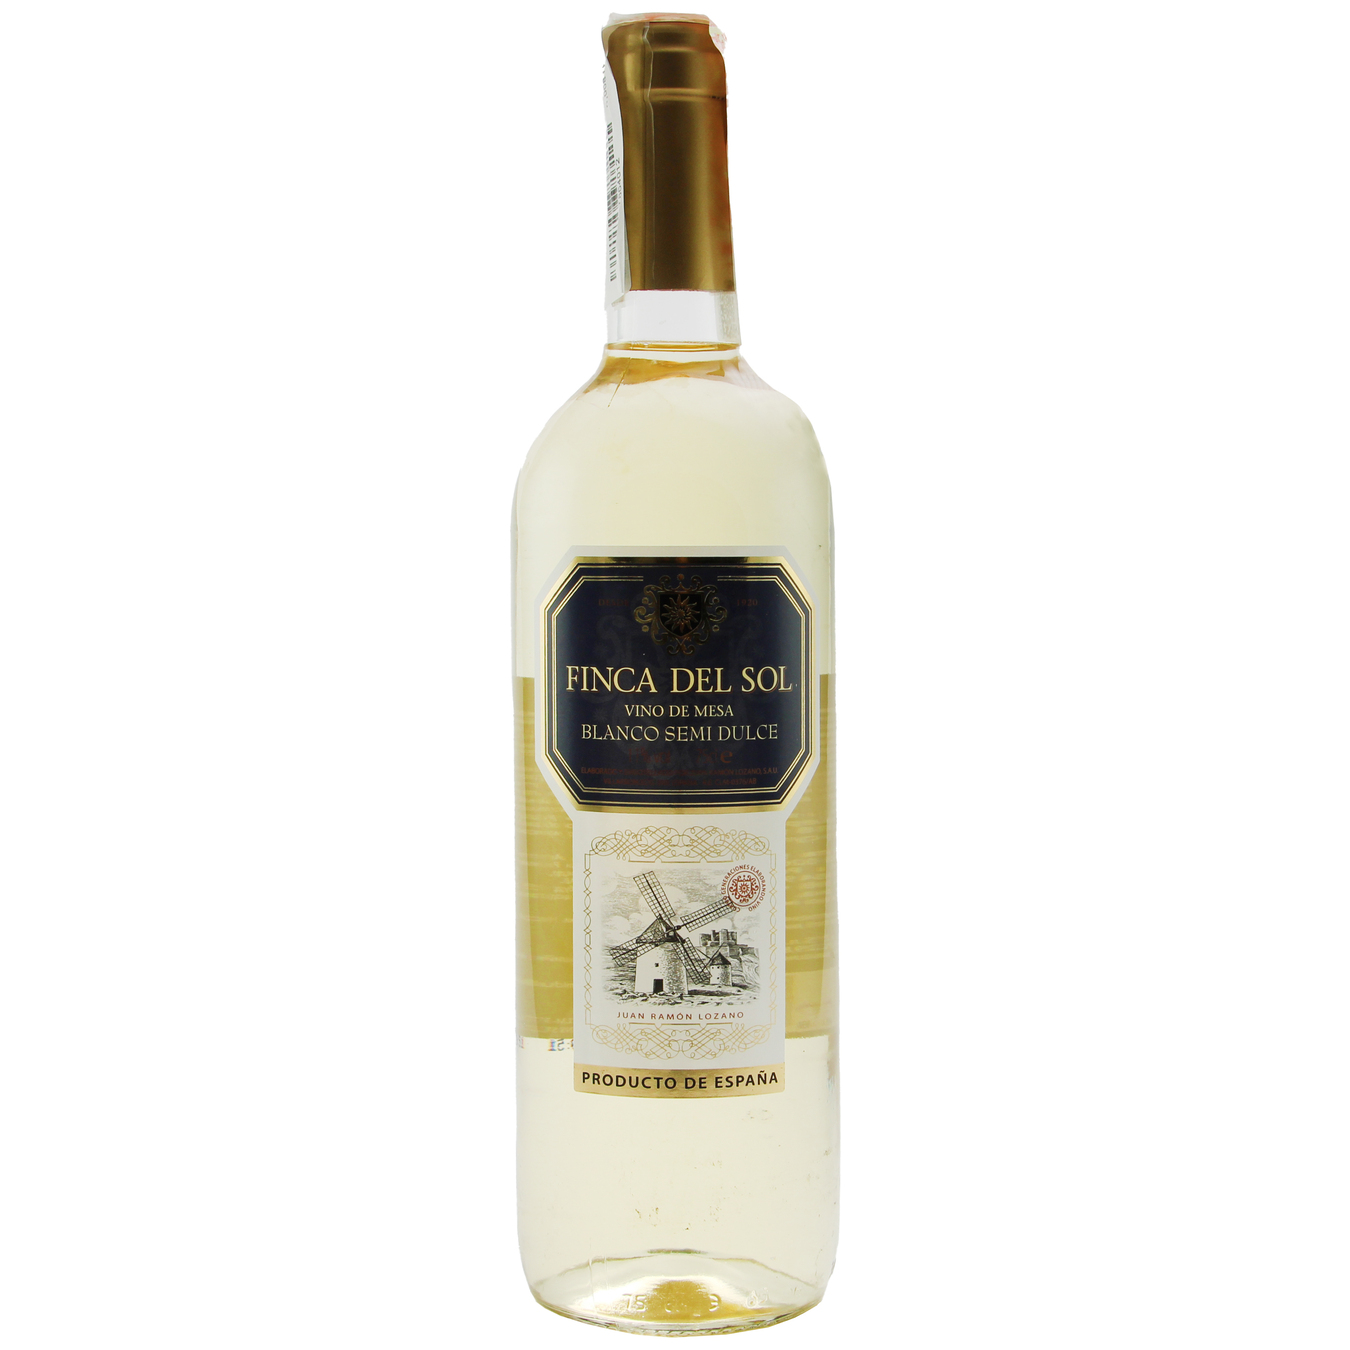 Finca Del Sol Blanco Semi Dulce white semi-sweet wine 13% 0,75l